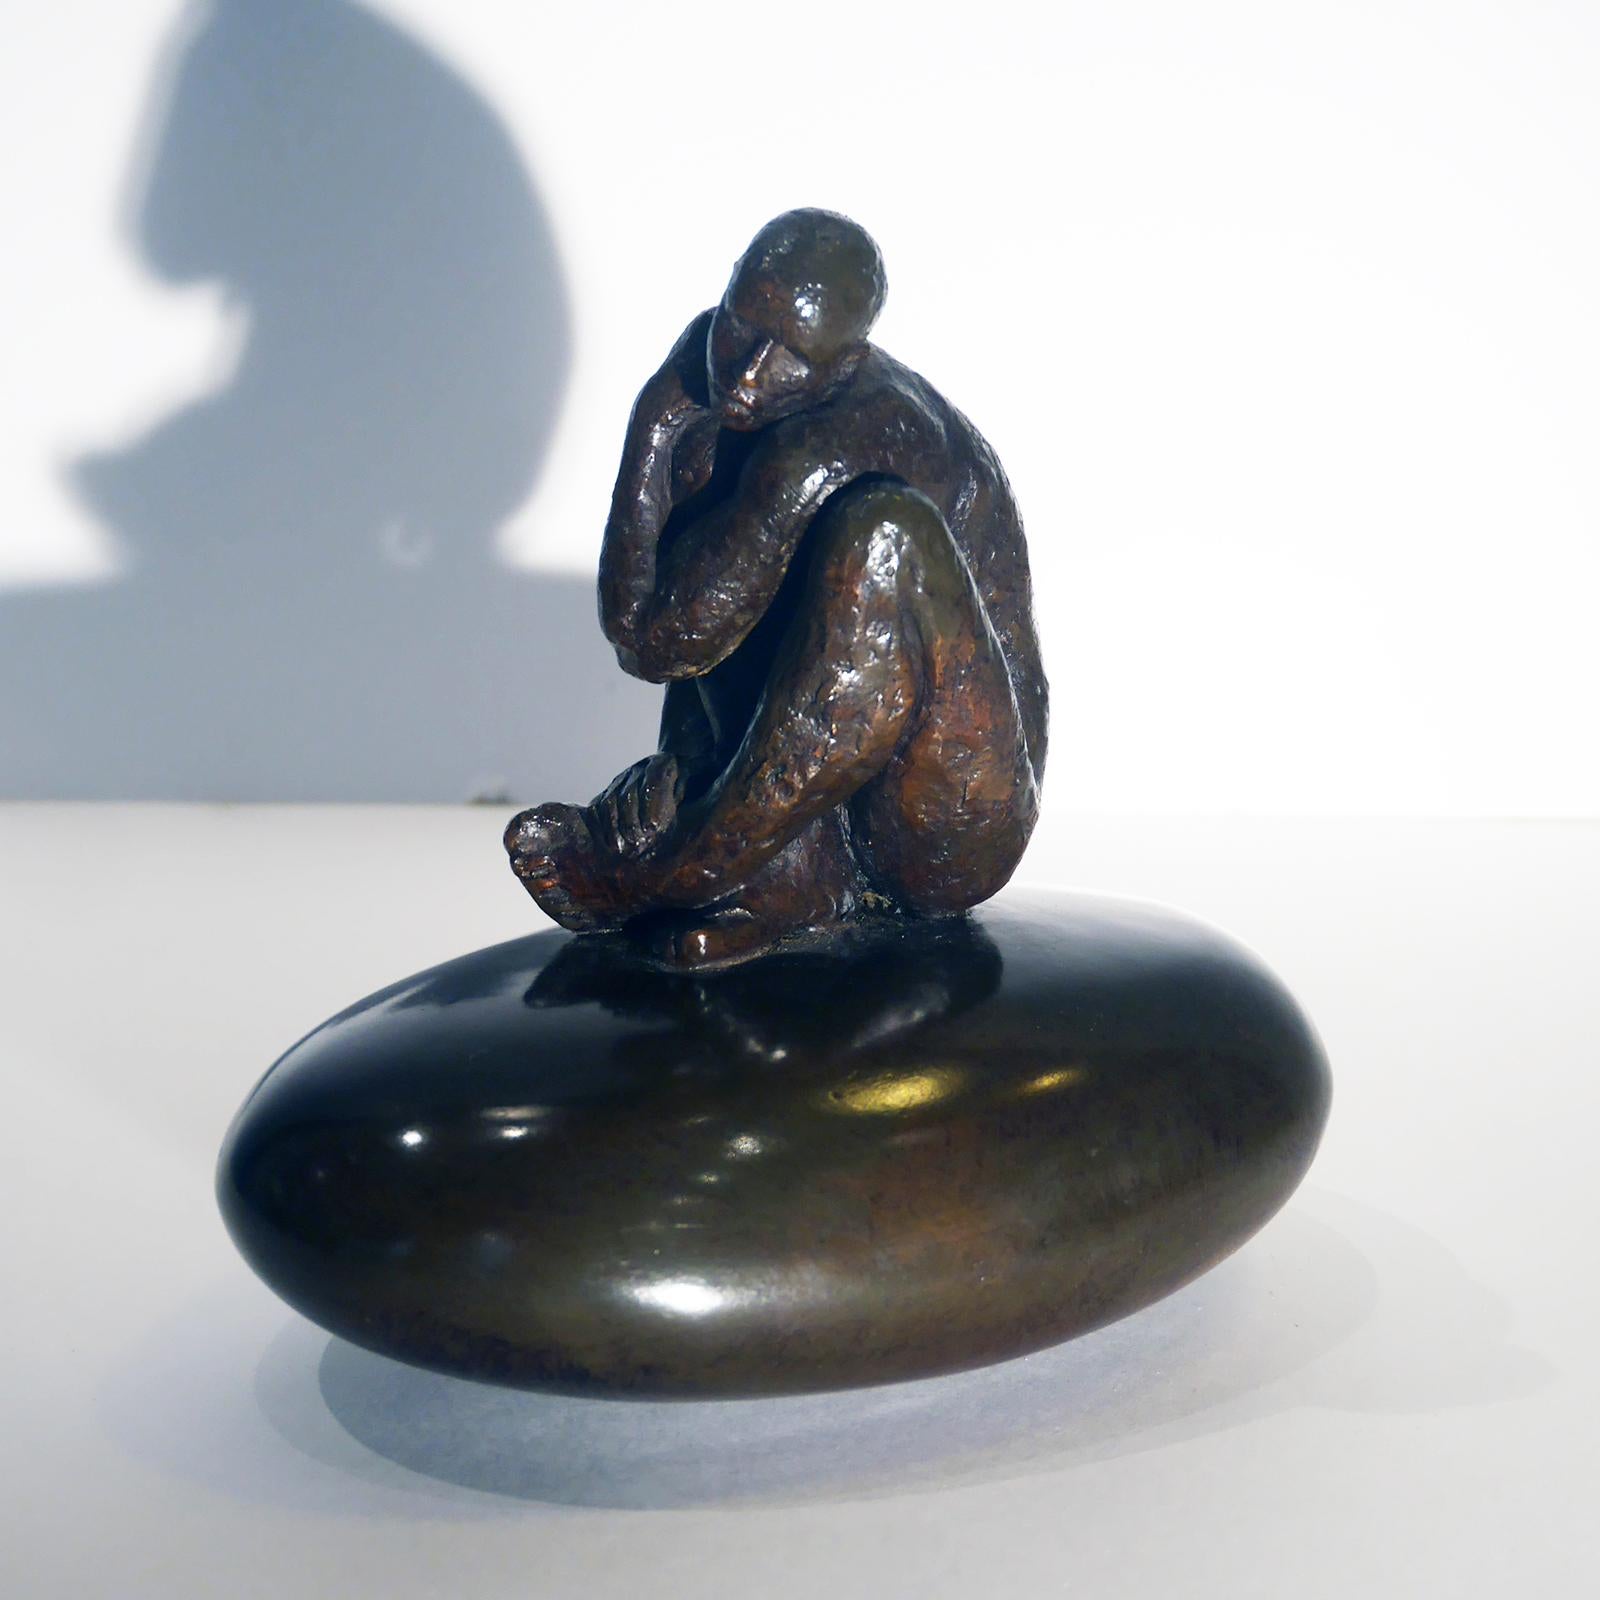 Maguy Banq - Au bord de l'eau, bronze For Sale at 1stDibs